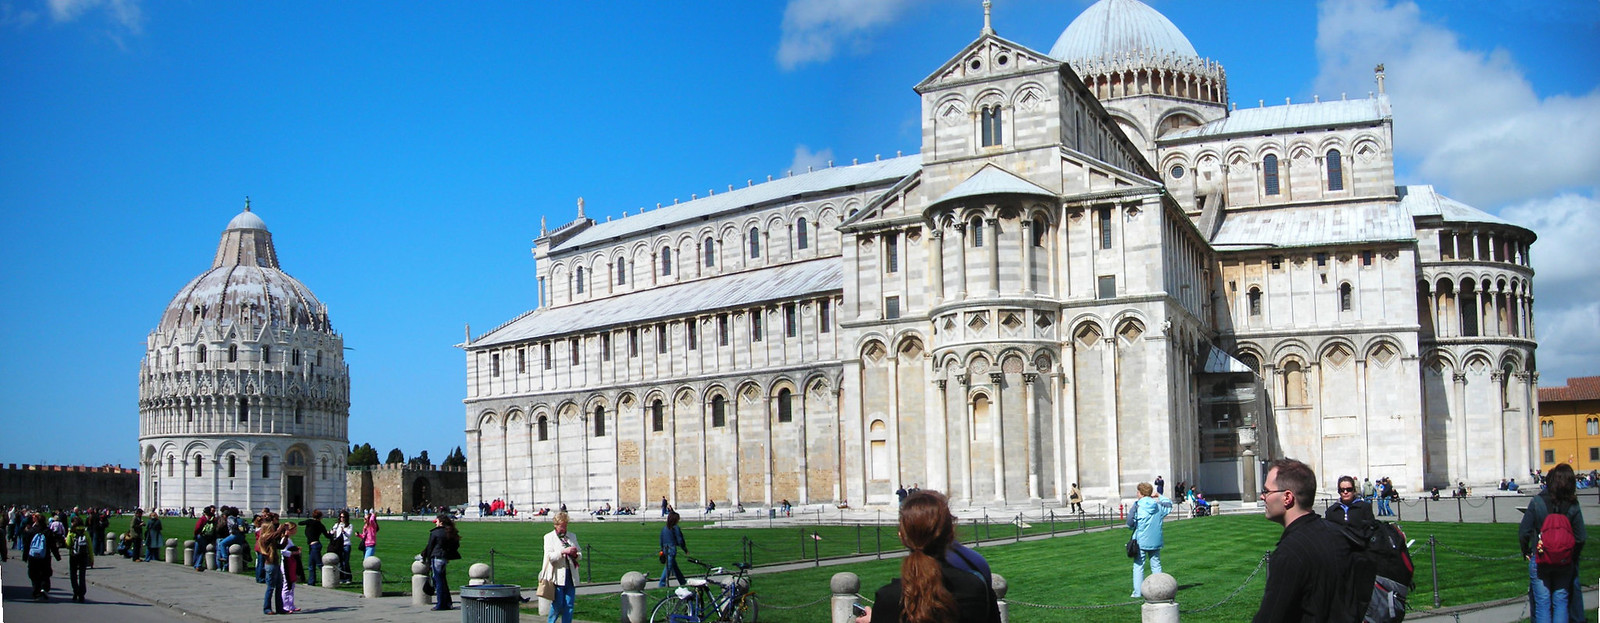 Nhà thờ Pisa